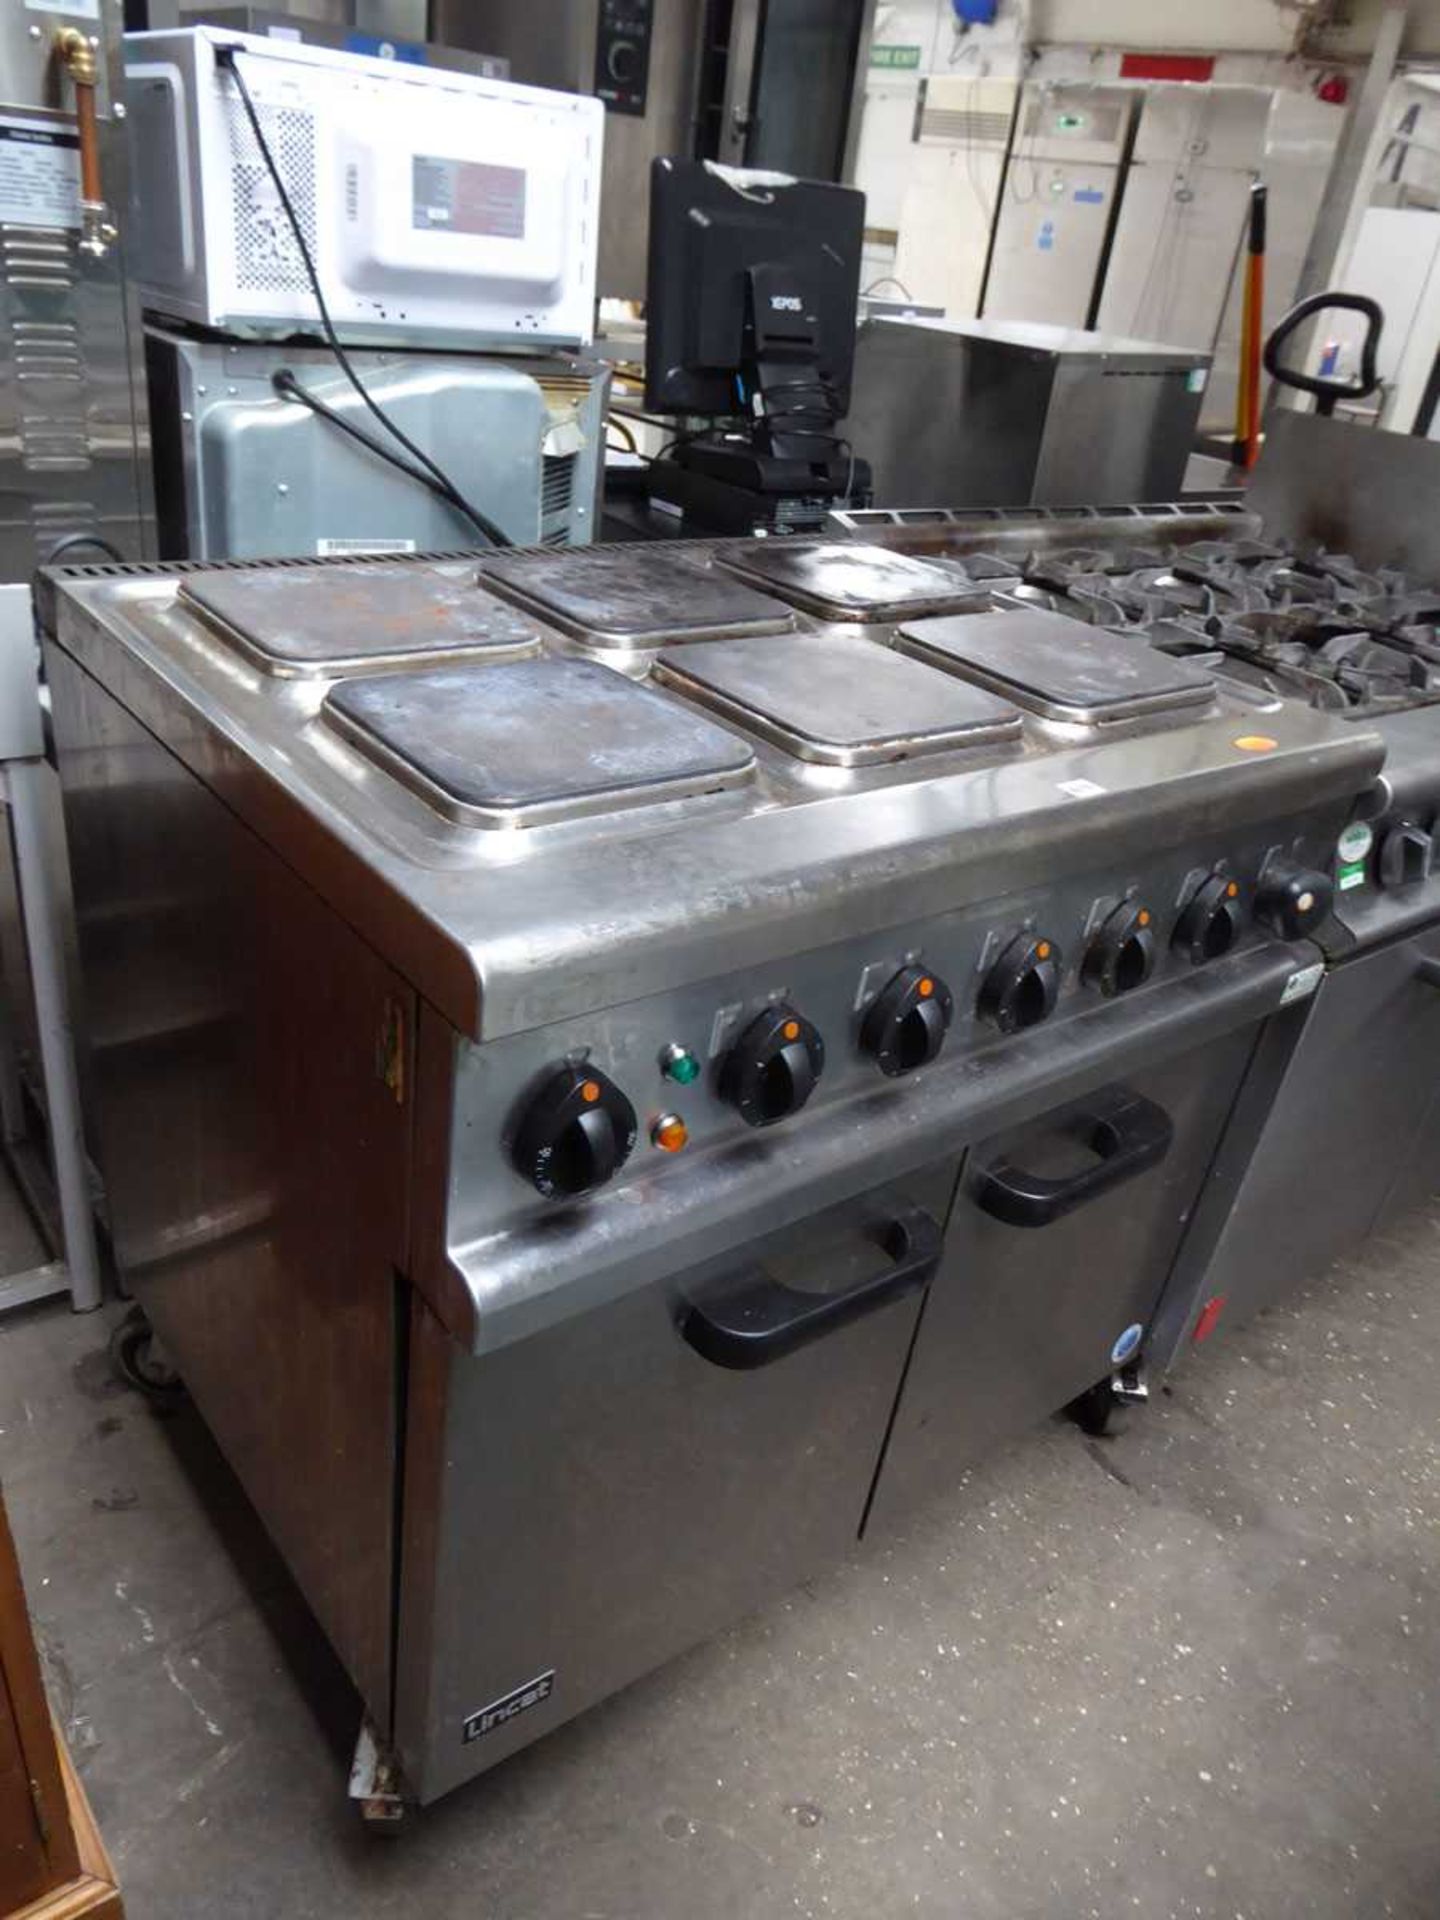 90cm electric Lincat 6 ring cooker with 2 door oven under